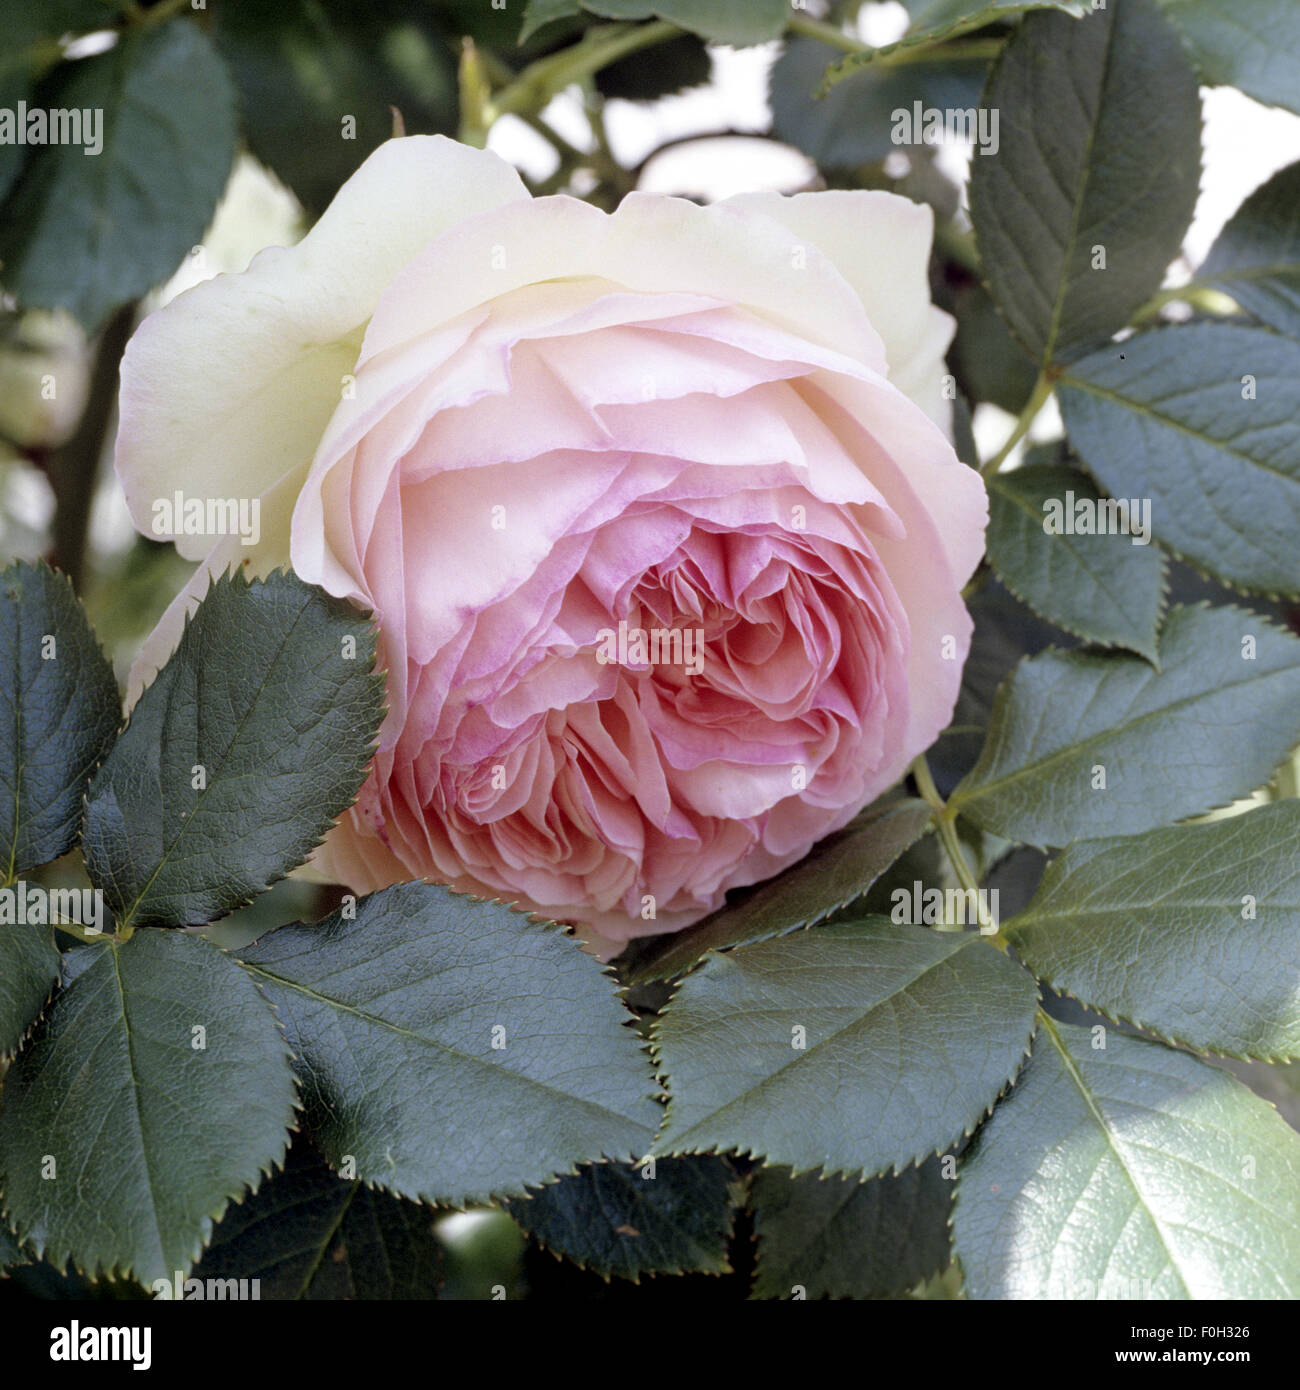 Strauchrose, Eden, Gartenblume, Alte rose, Jahr 1796 Stock Photo - Alamy